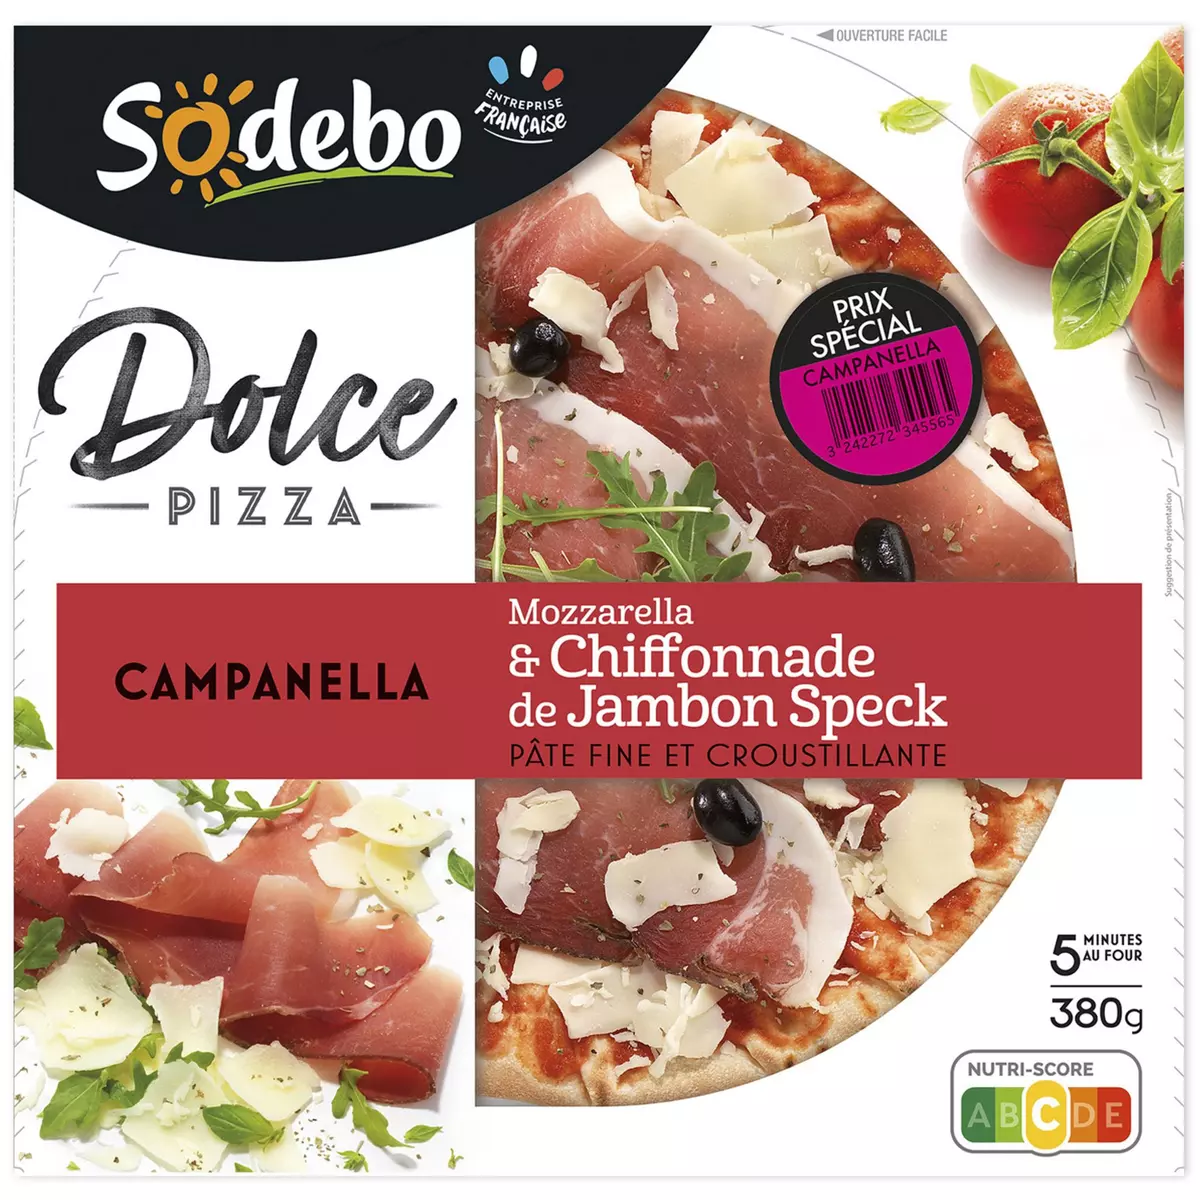 SODEBO Dolce Pizza Campanella mozzarella et chiffonnade de jambon speck 380g